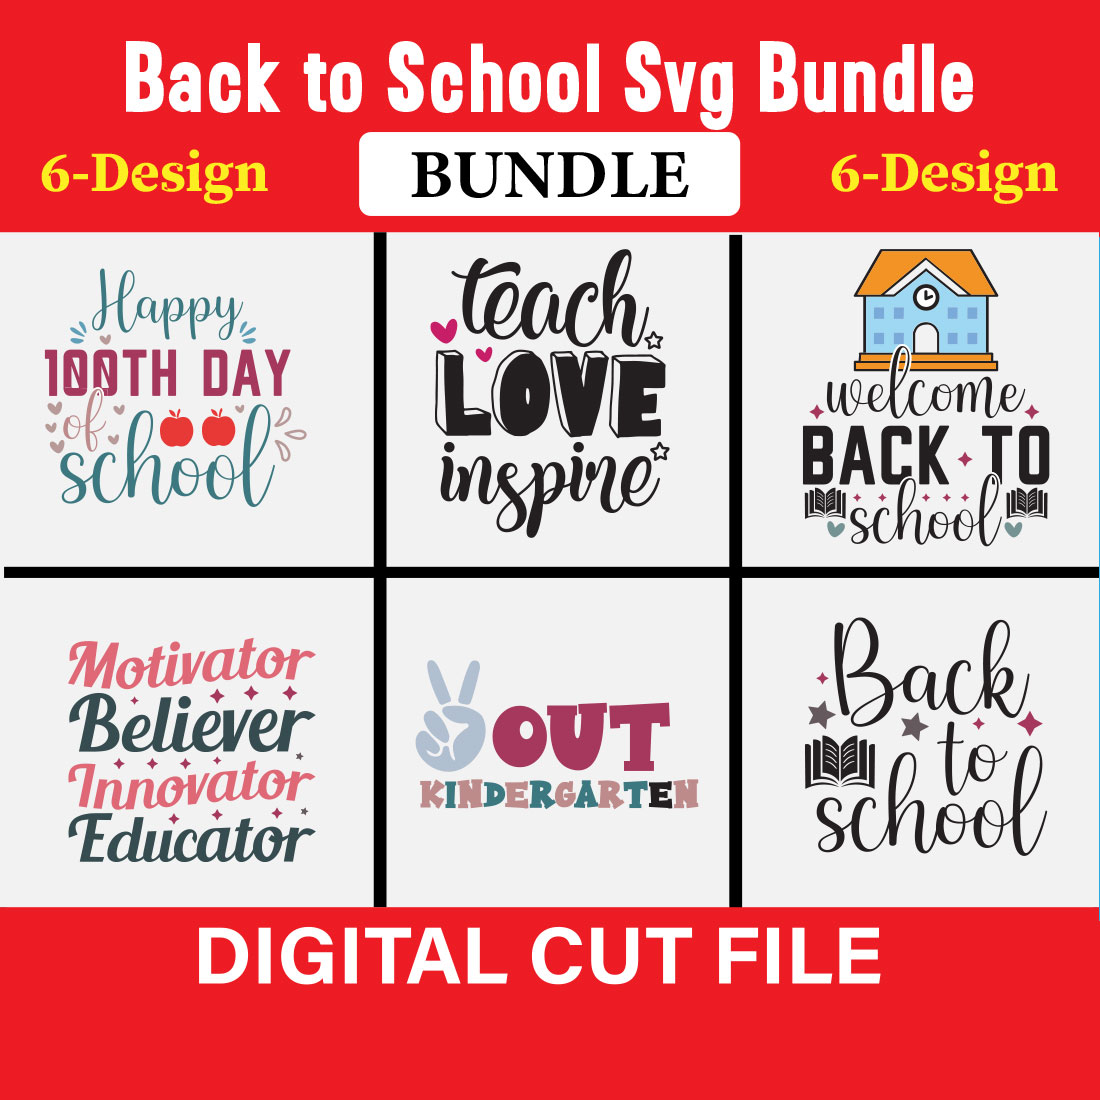 Back to School Svg Bundle SVG Bundle Vol-01 cover image.